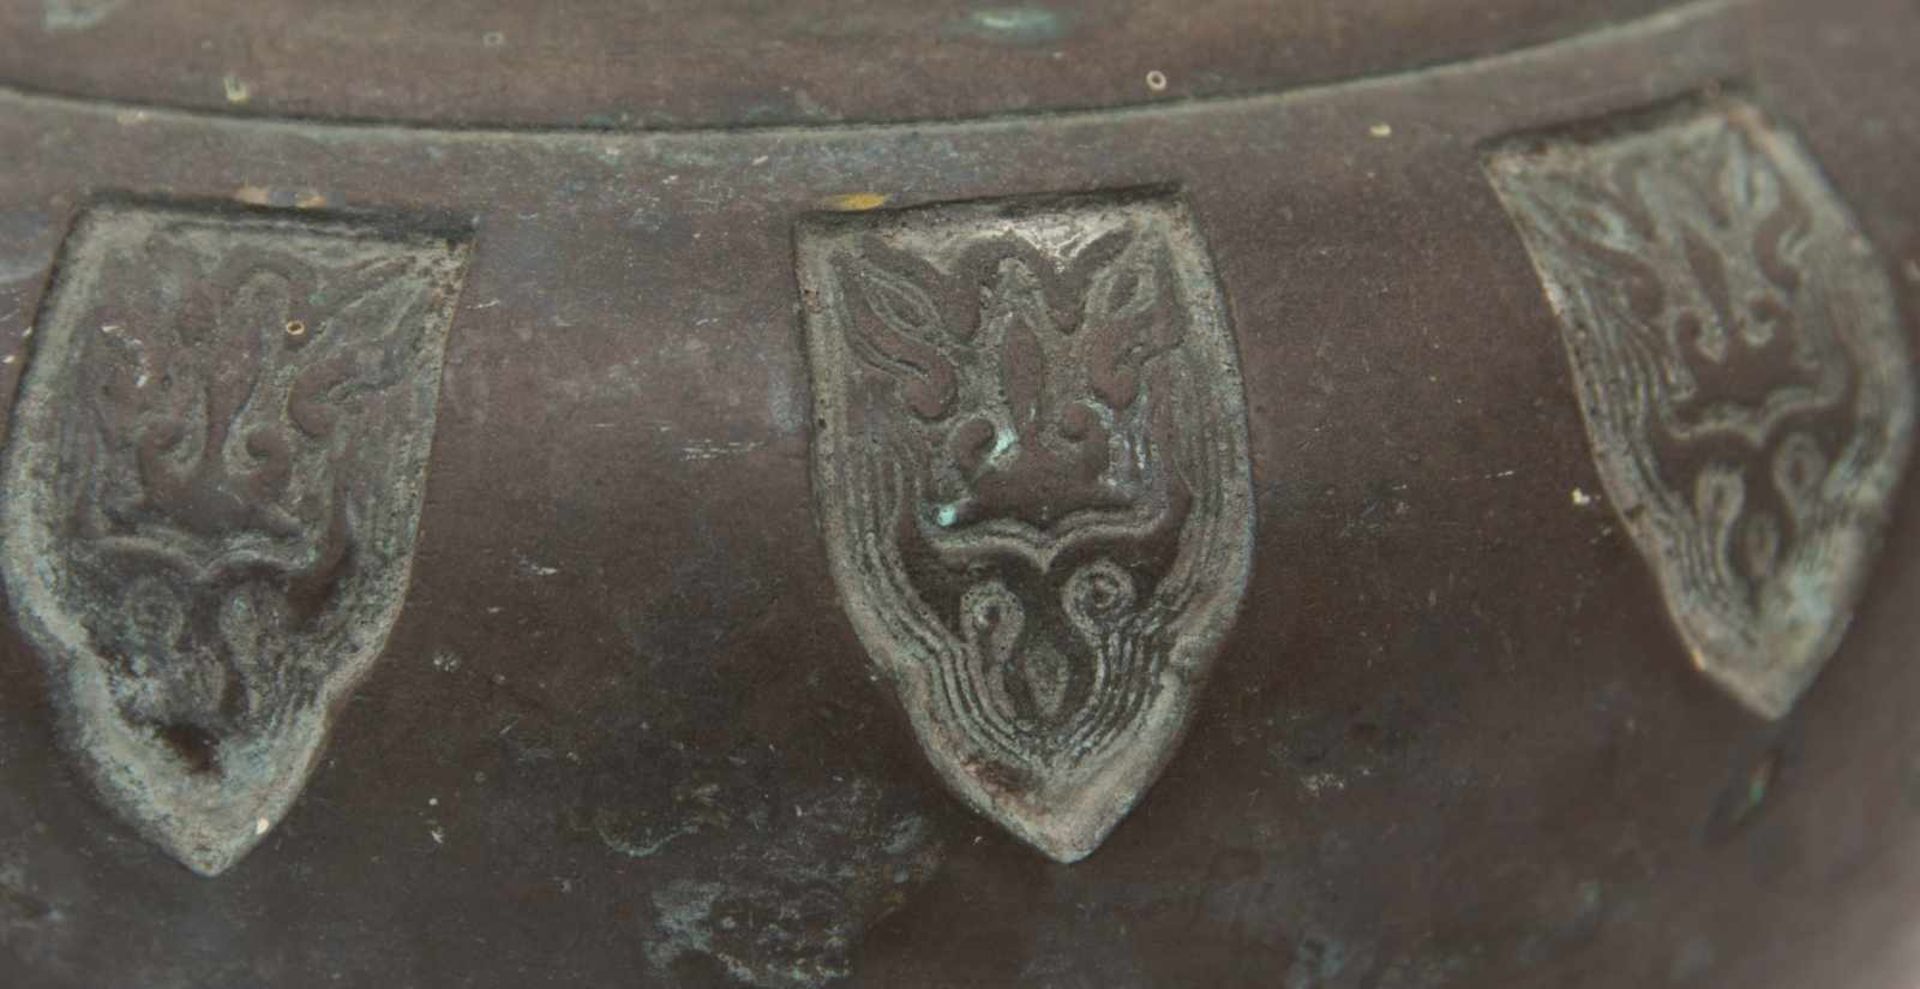 TOPF MIT HENKEL, Metall geprägt, China um 1900Höhe: 10 cm, Durchmesser: 19 cm.Altersspuren. - Bild 2 aus 7